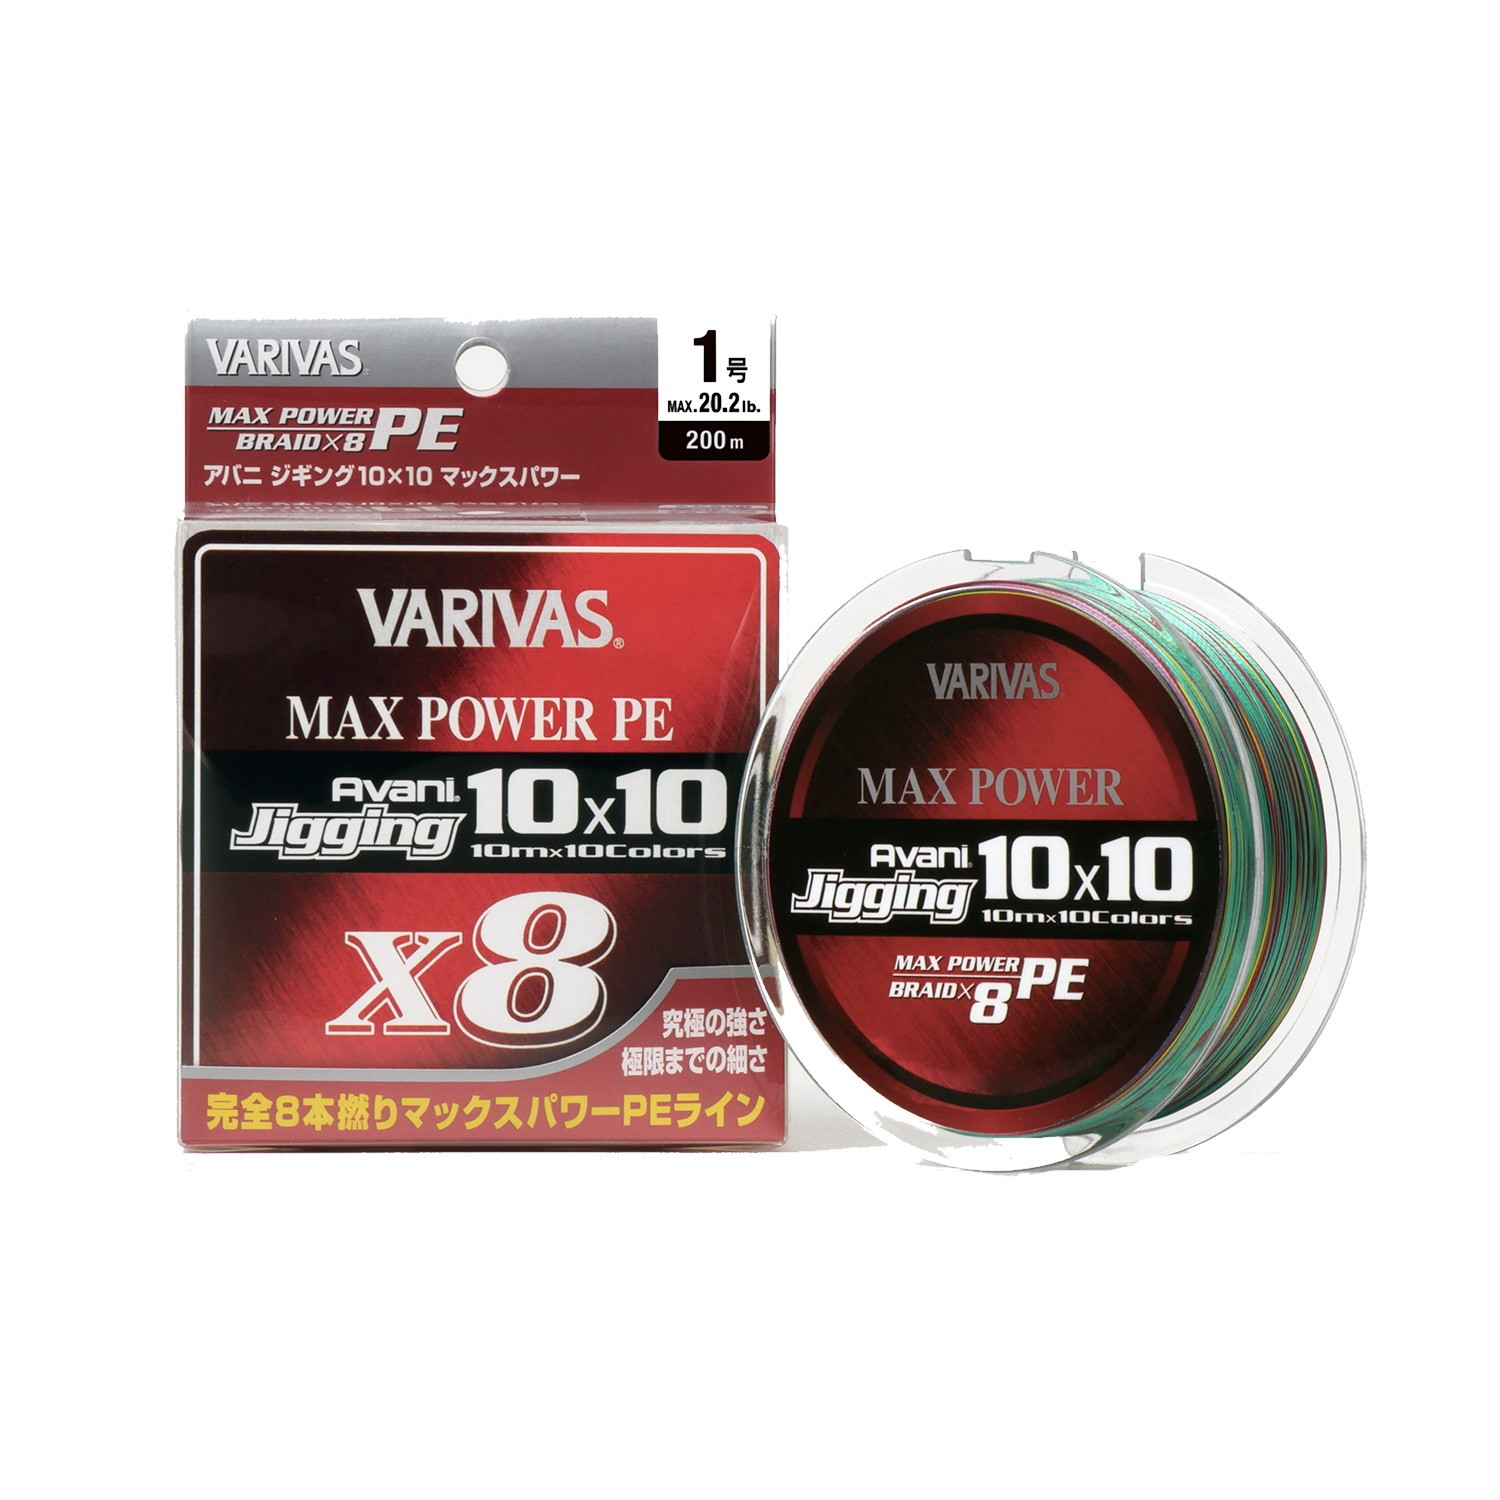 Шнур Varivas Avani Jigging 10x10 Max Power PE X8 200м PE 3.0 - фото 1